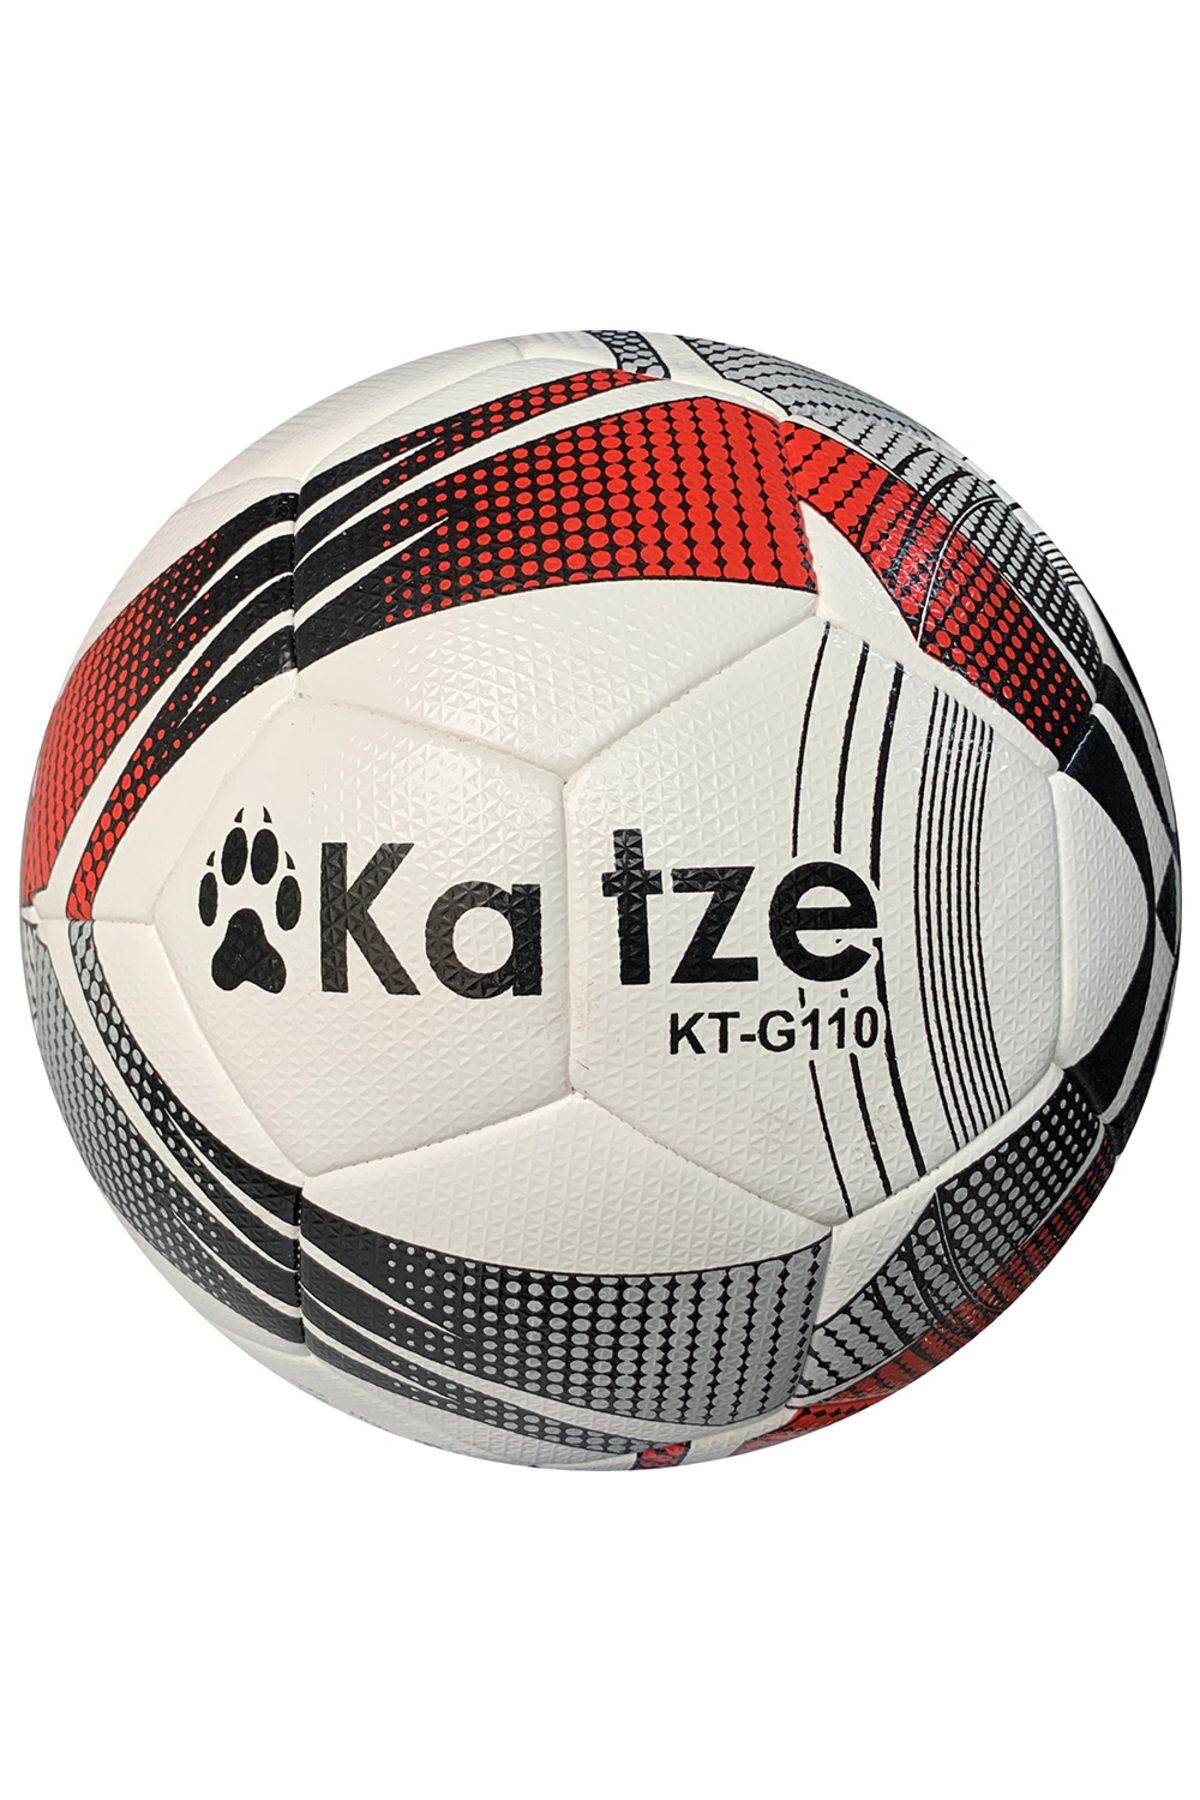 Katze KT-G110 Hybrid Futbol Topu 5 Numara